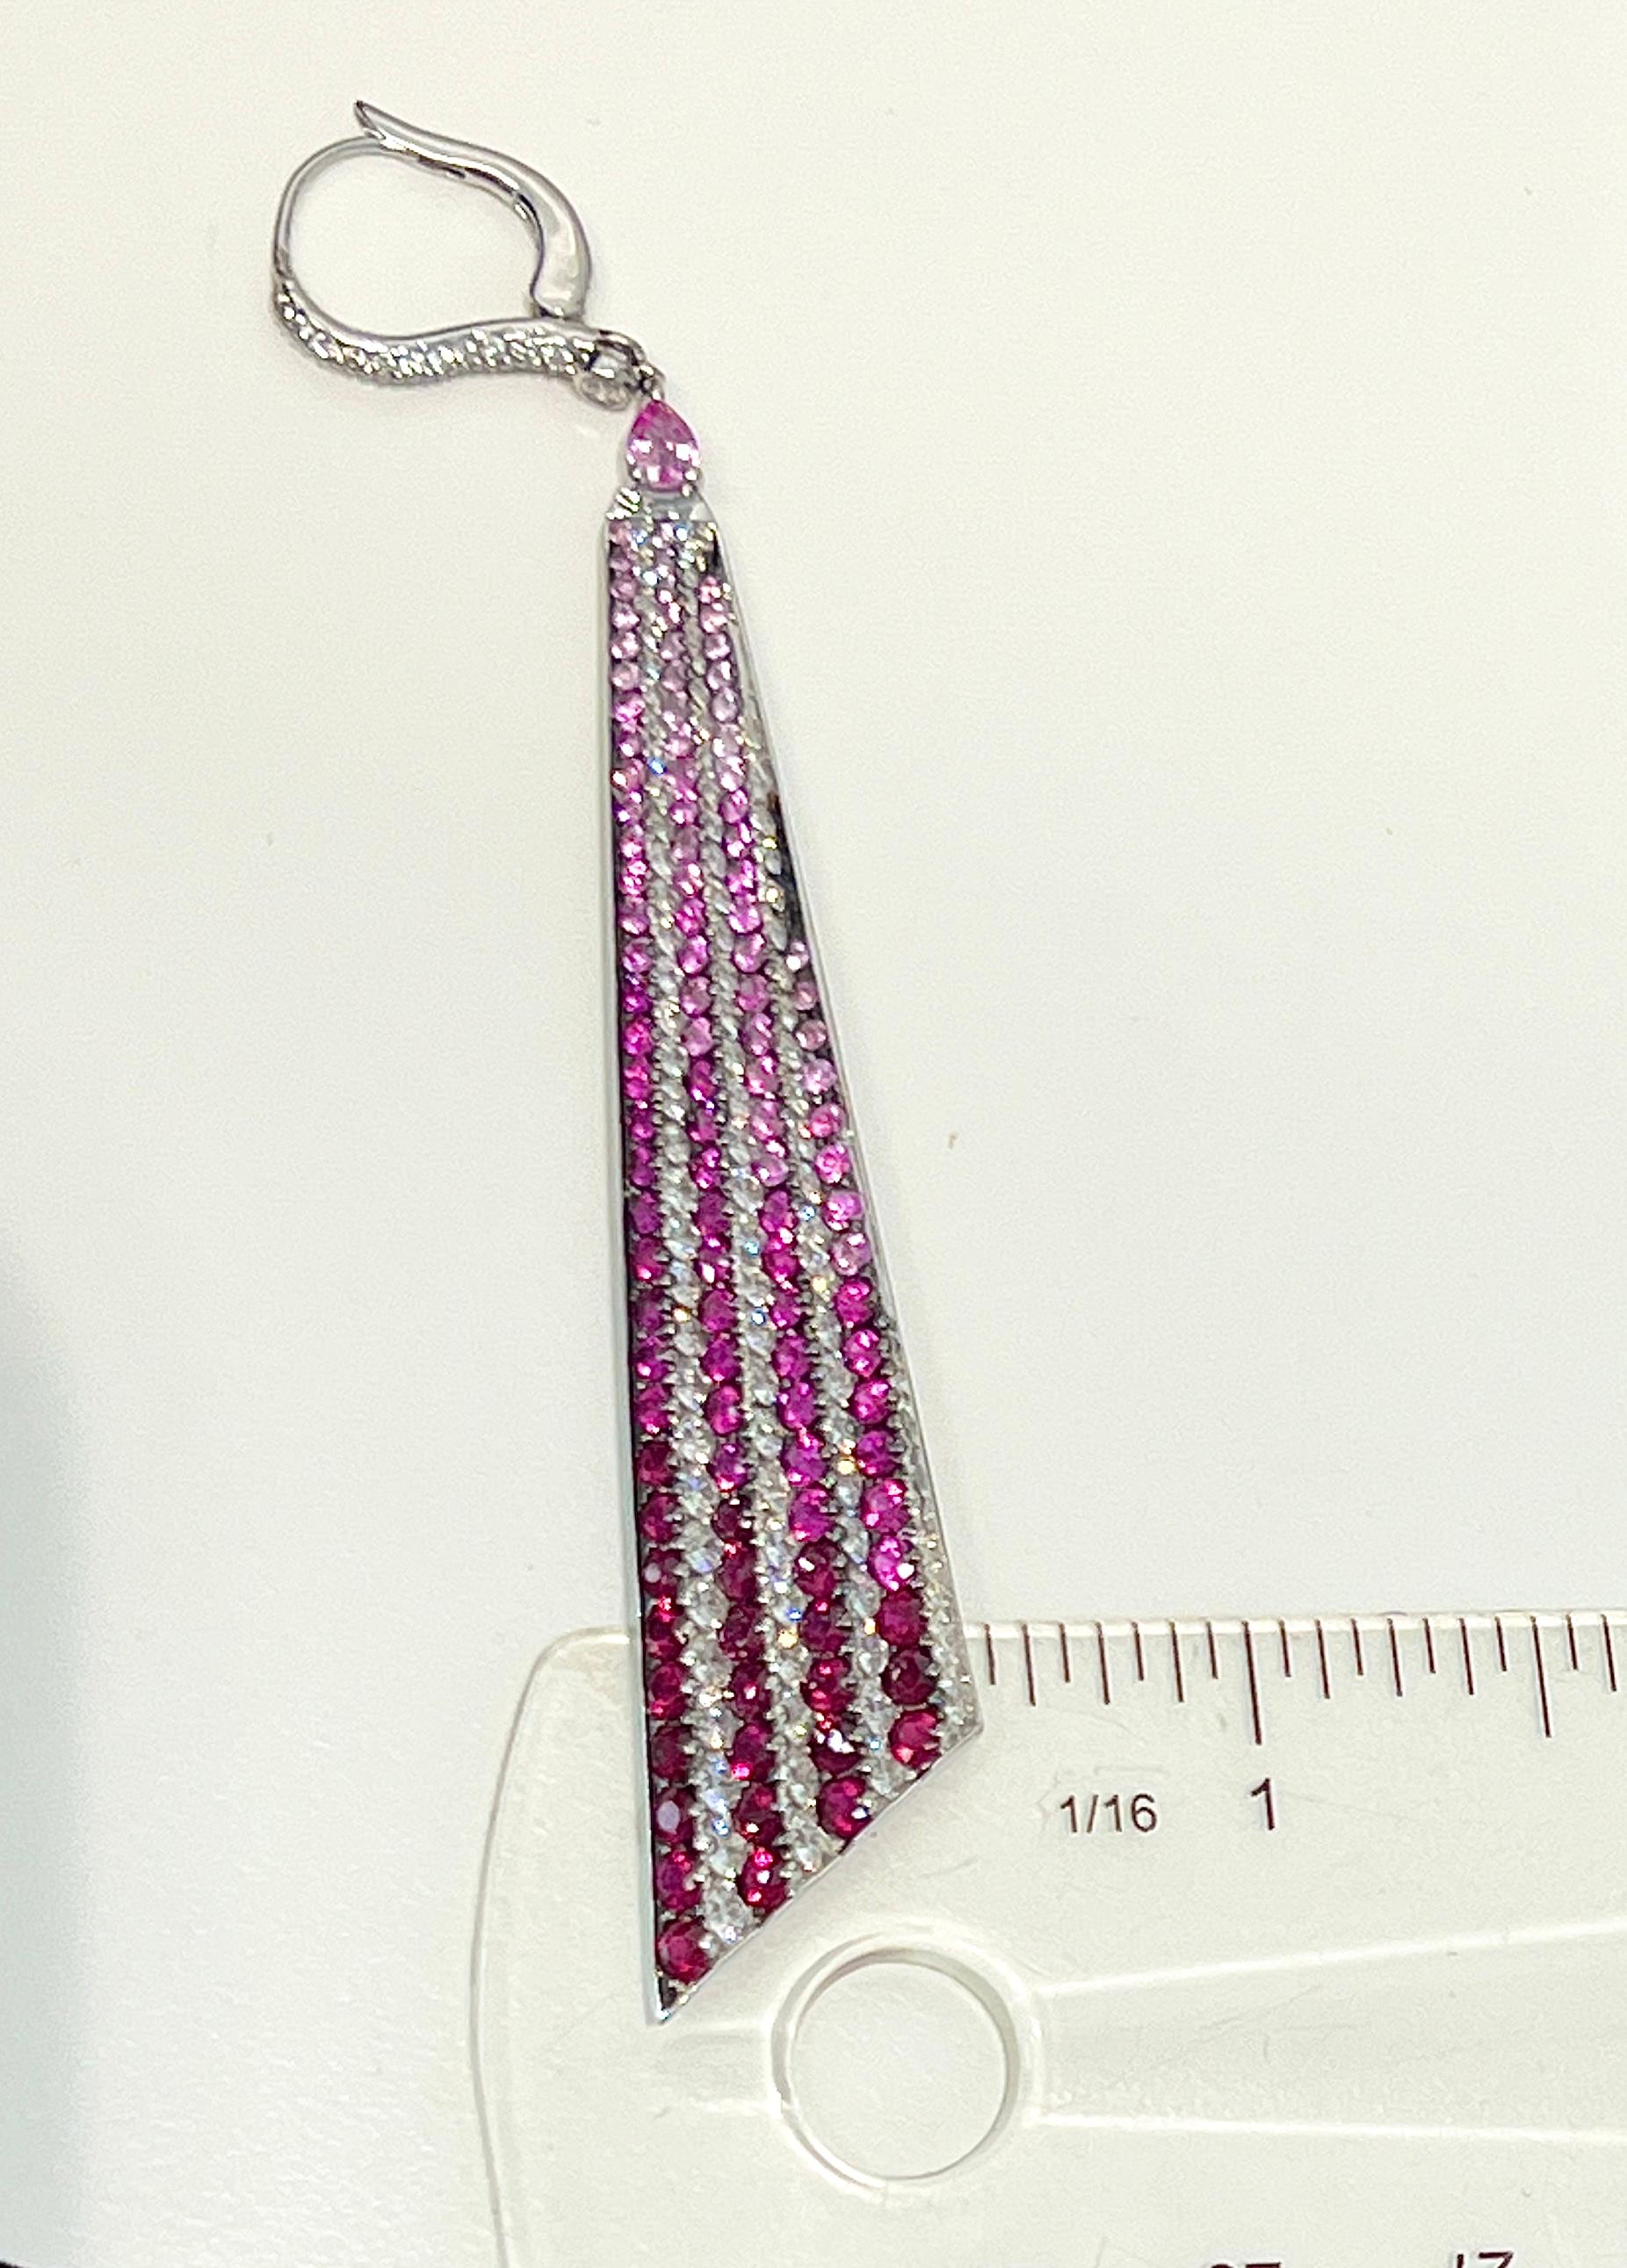 pink sapphire dangle earrings